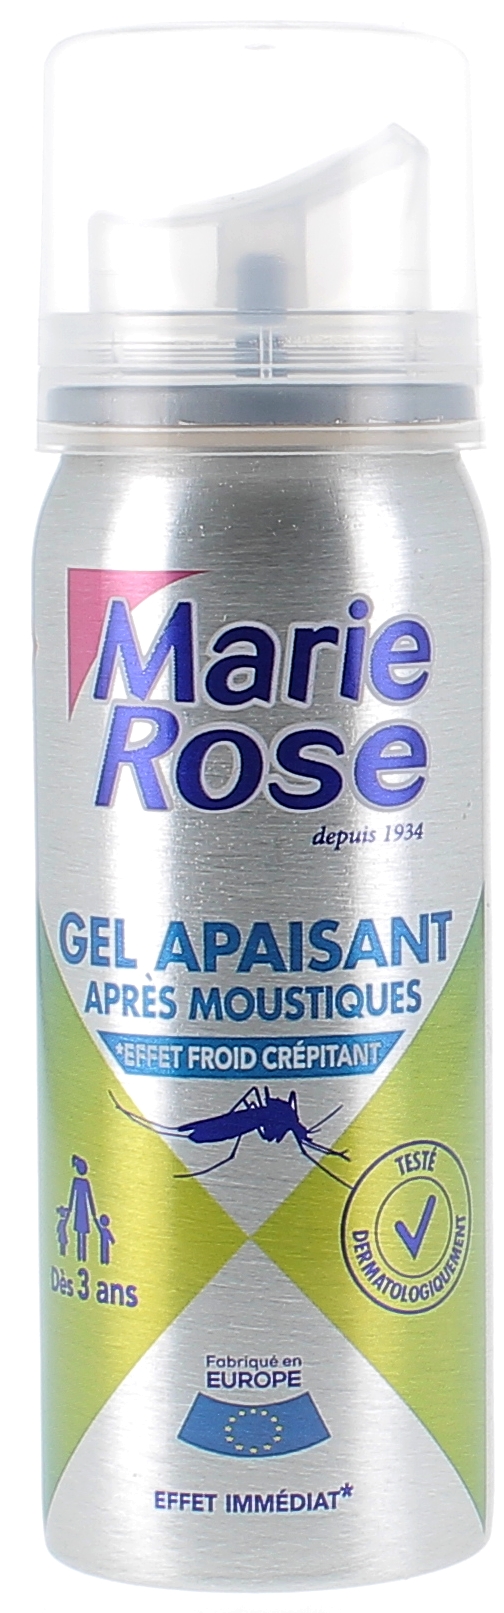 Gel apaisant après moustiques Marie Rose - spray de 50 ml